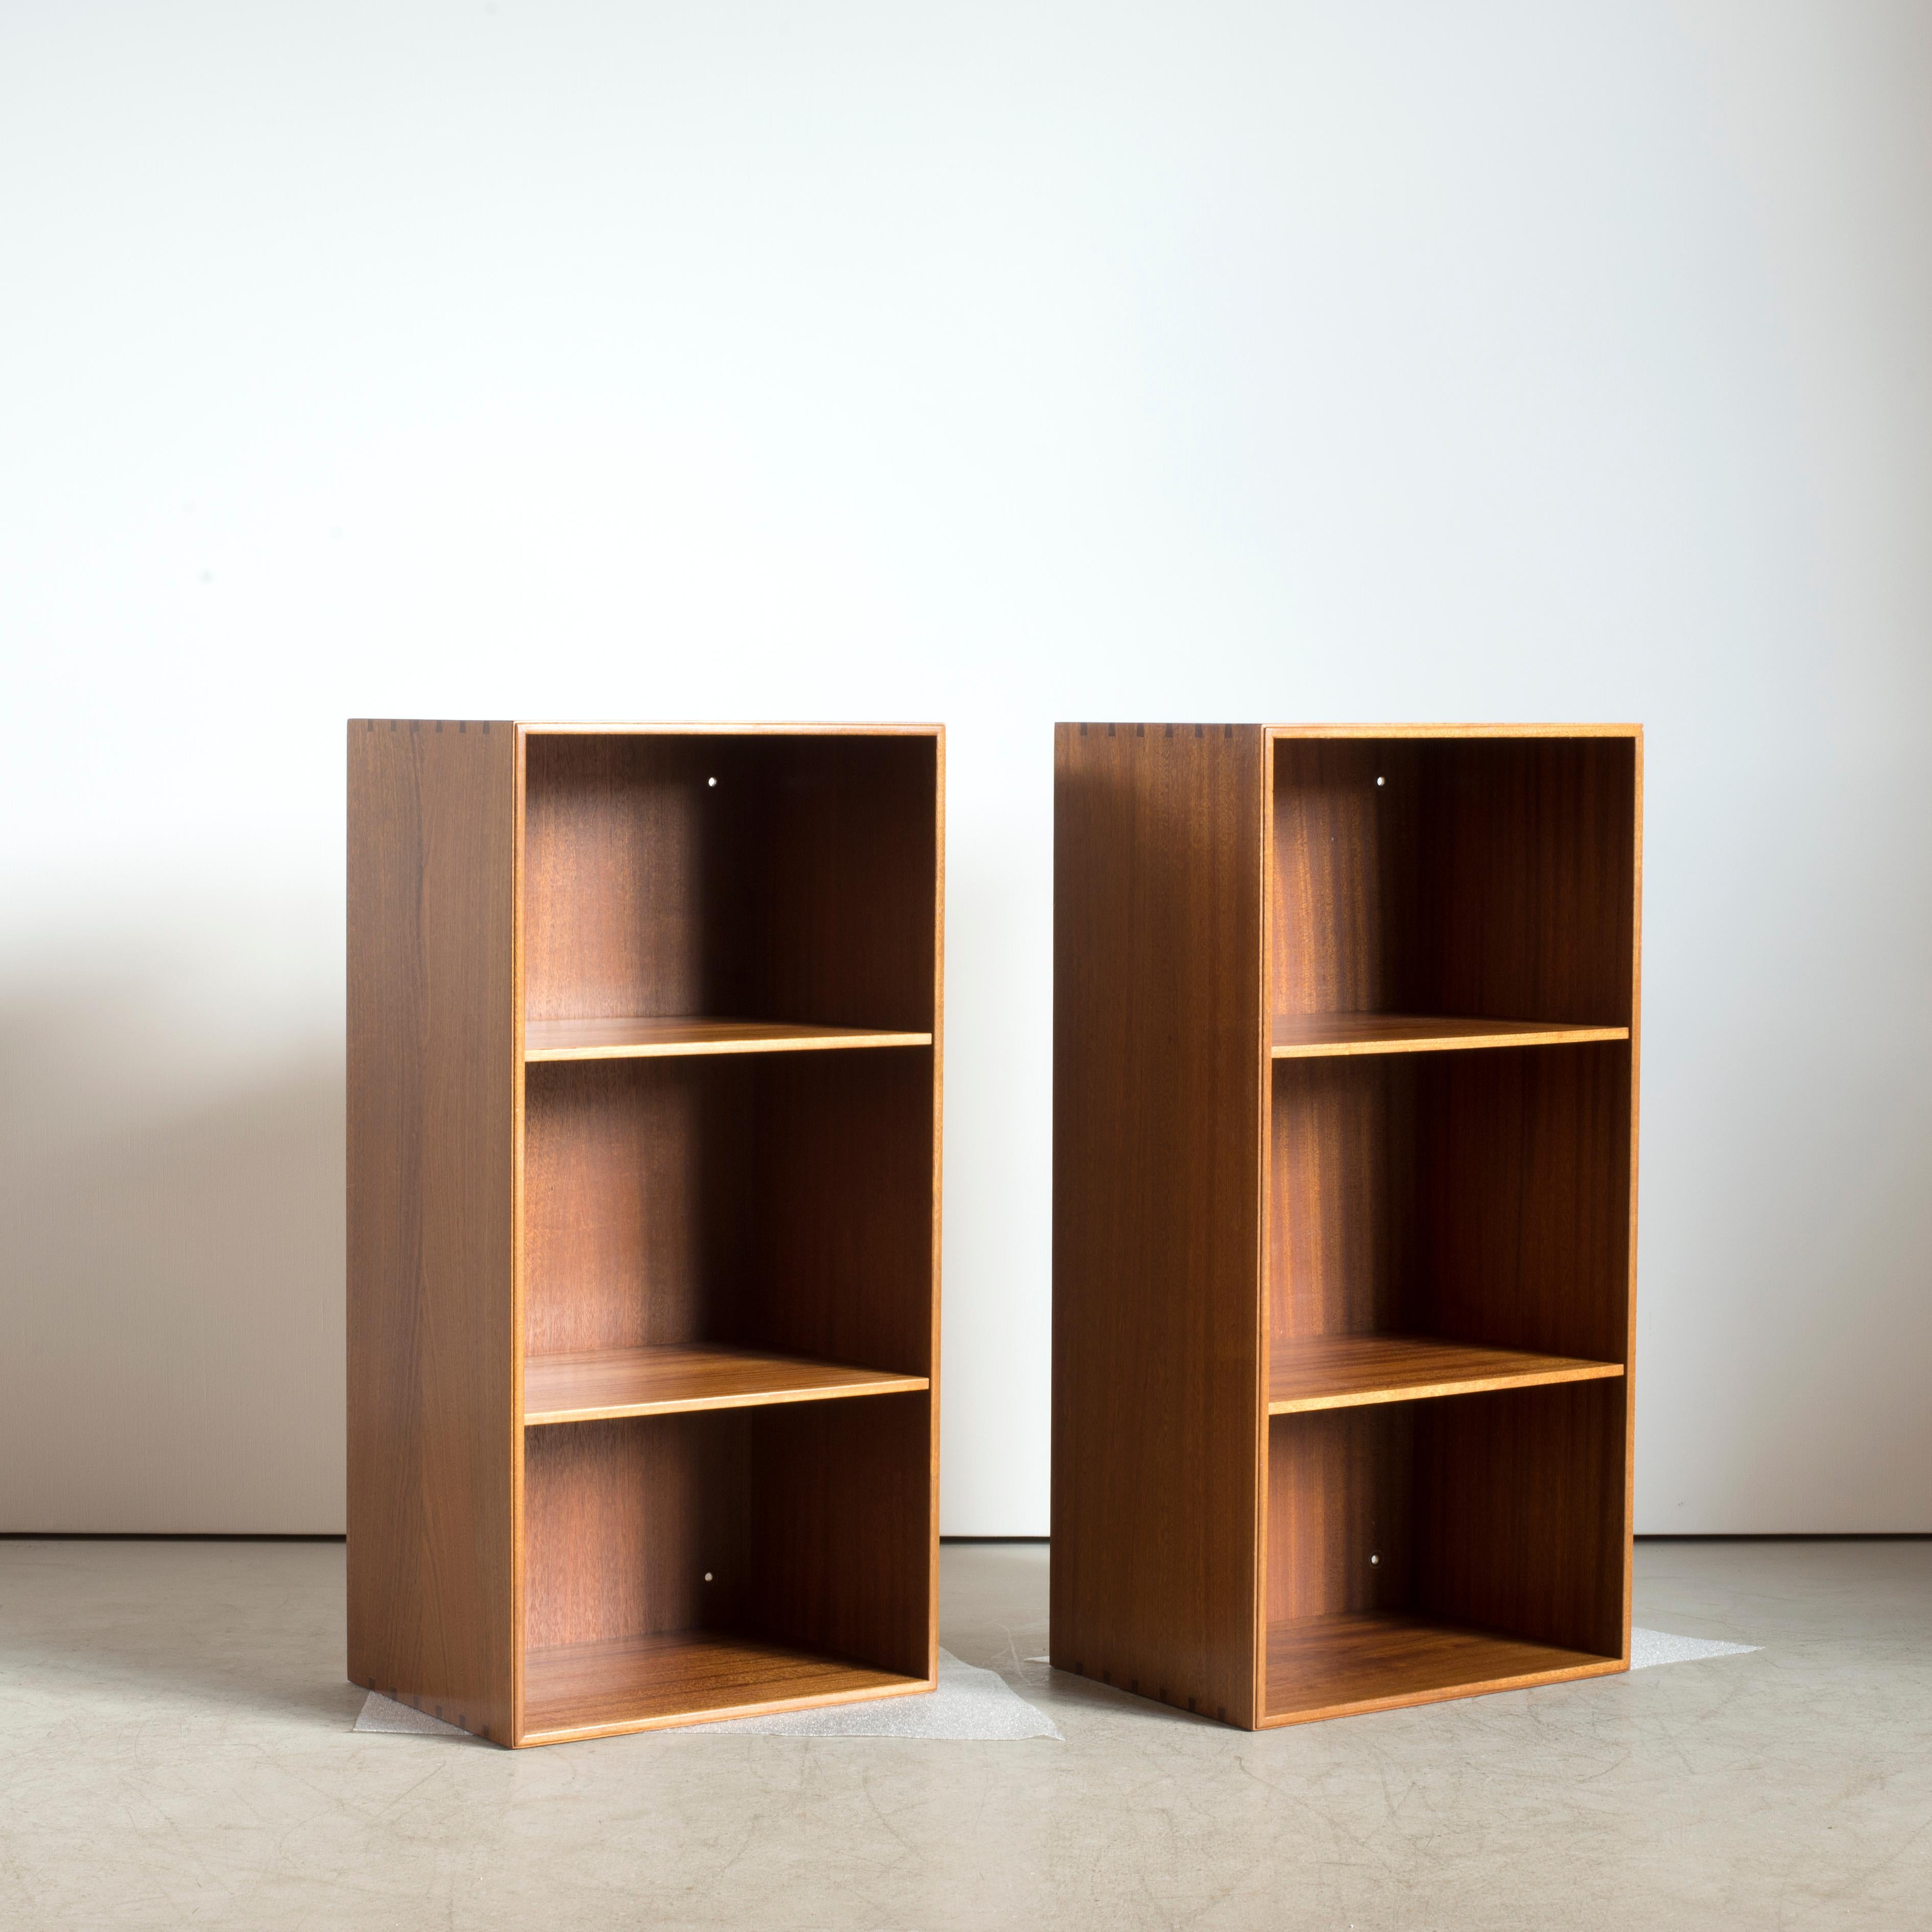 Danish Mogens Koch Bookcases for Rud. Rasmussen